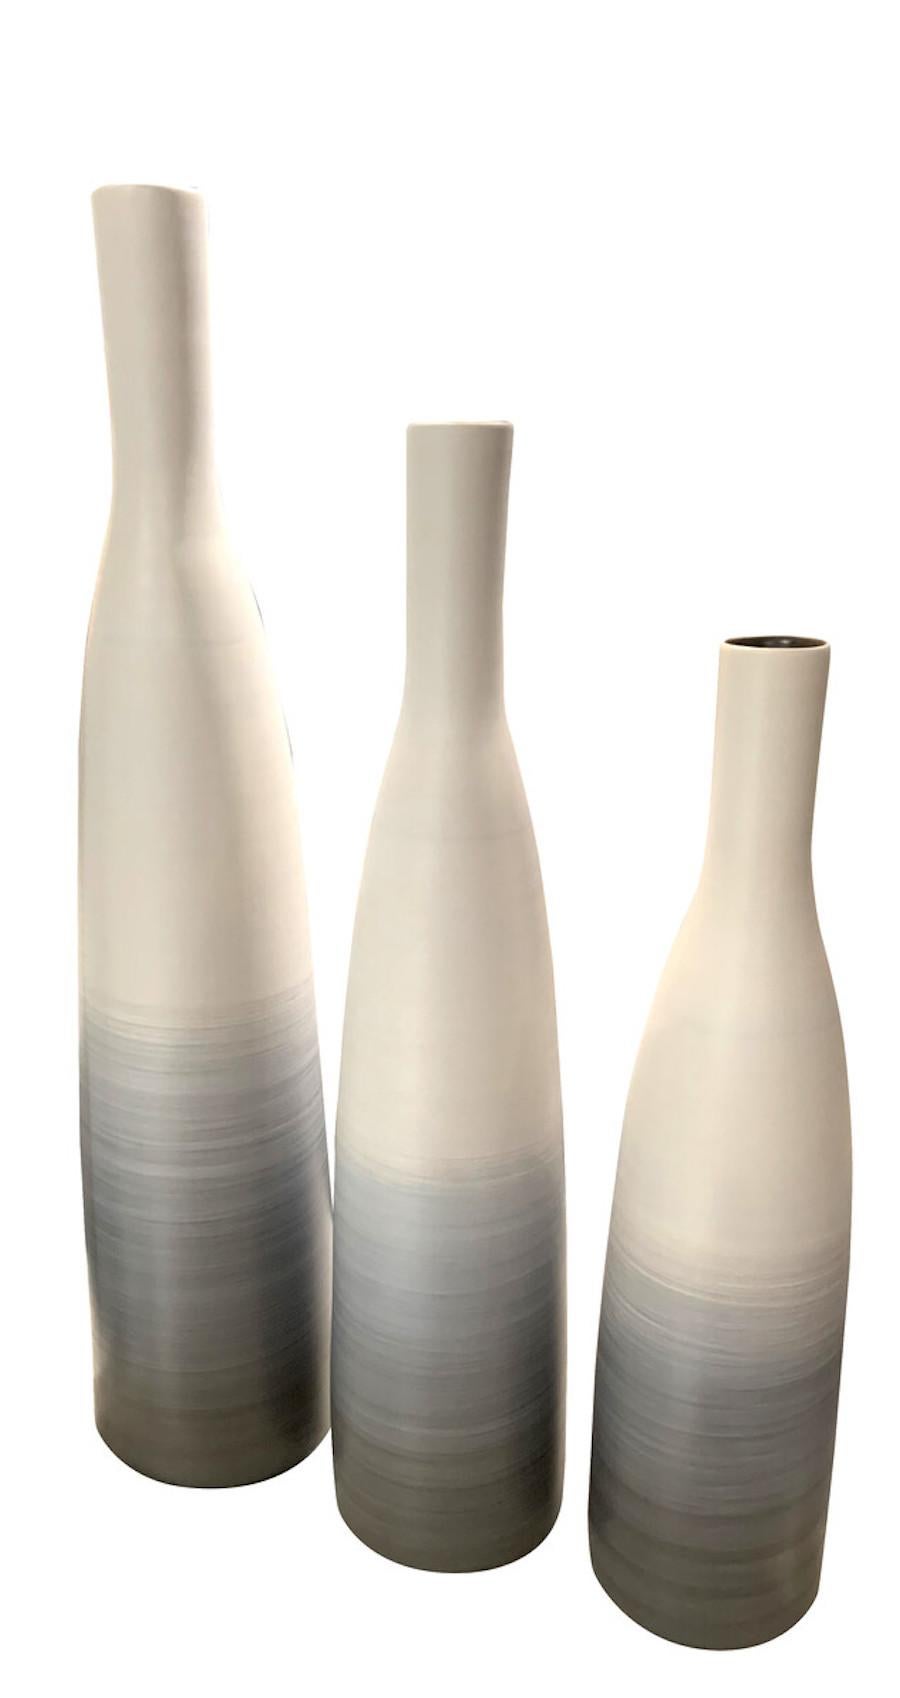 ombre glaze pottery